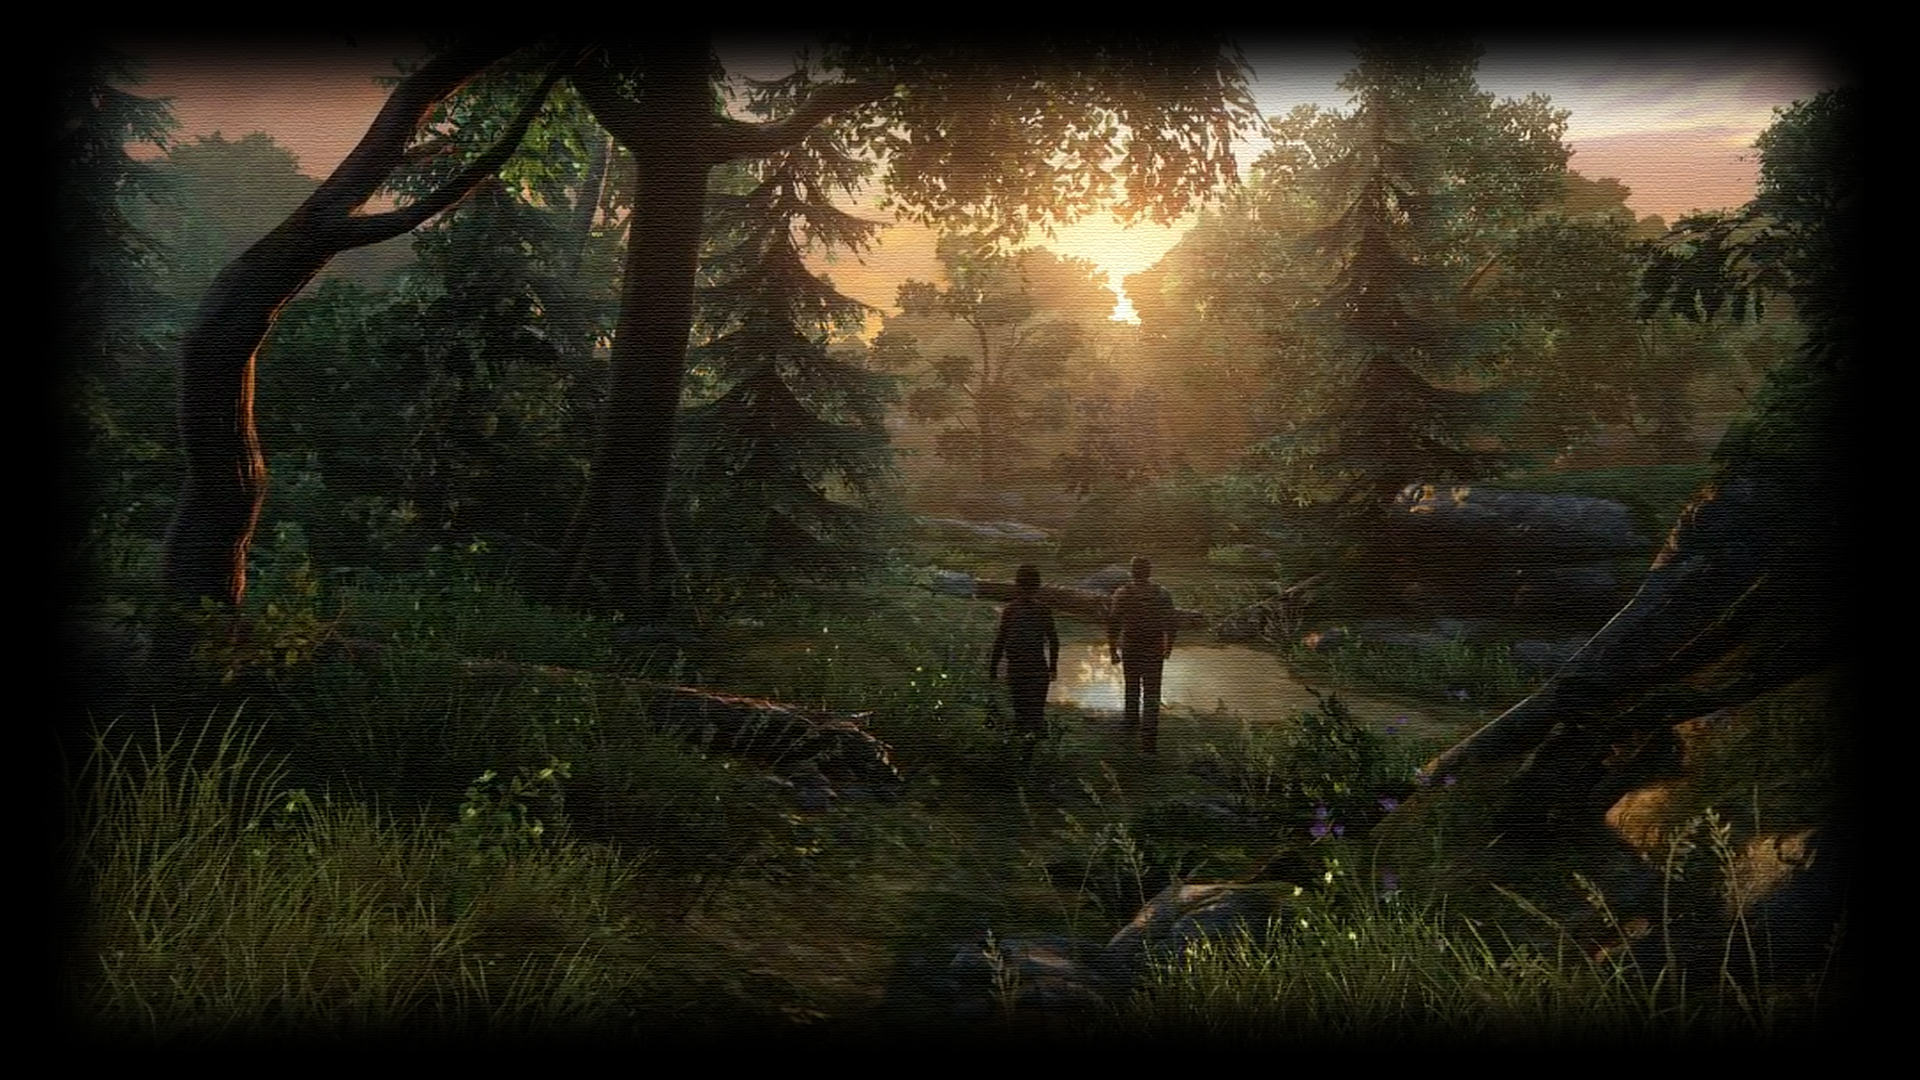 The Last of Us Joel & Ellie Wallpapers - The Last of Us Wallpapers